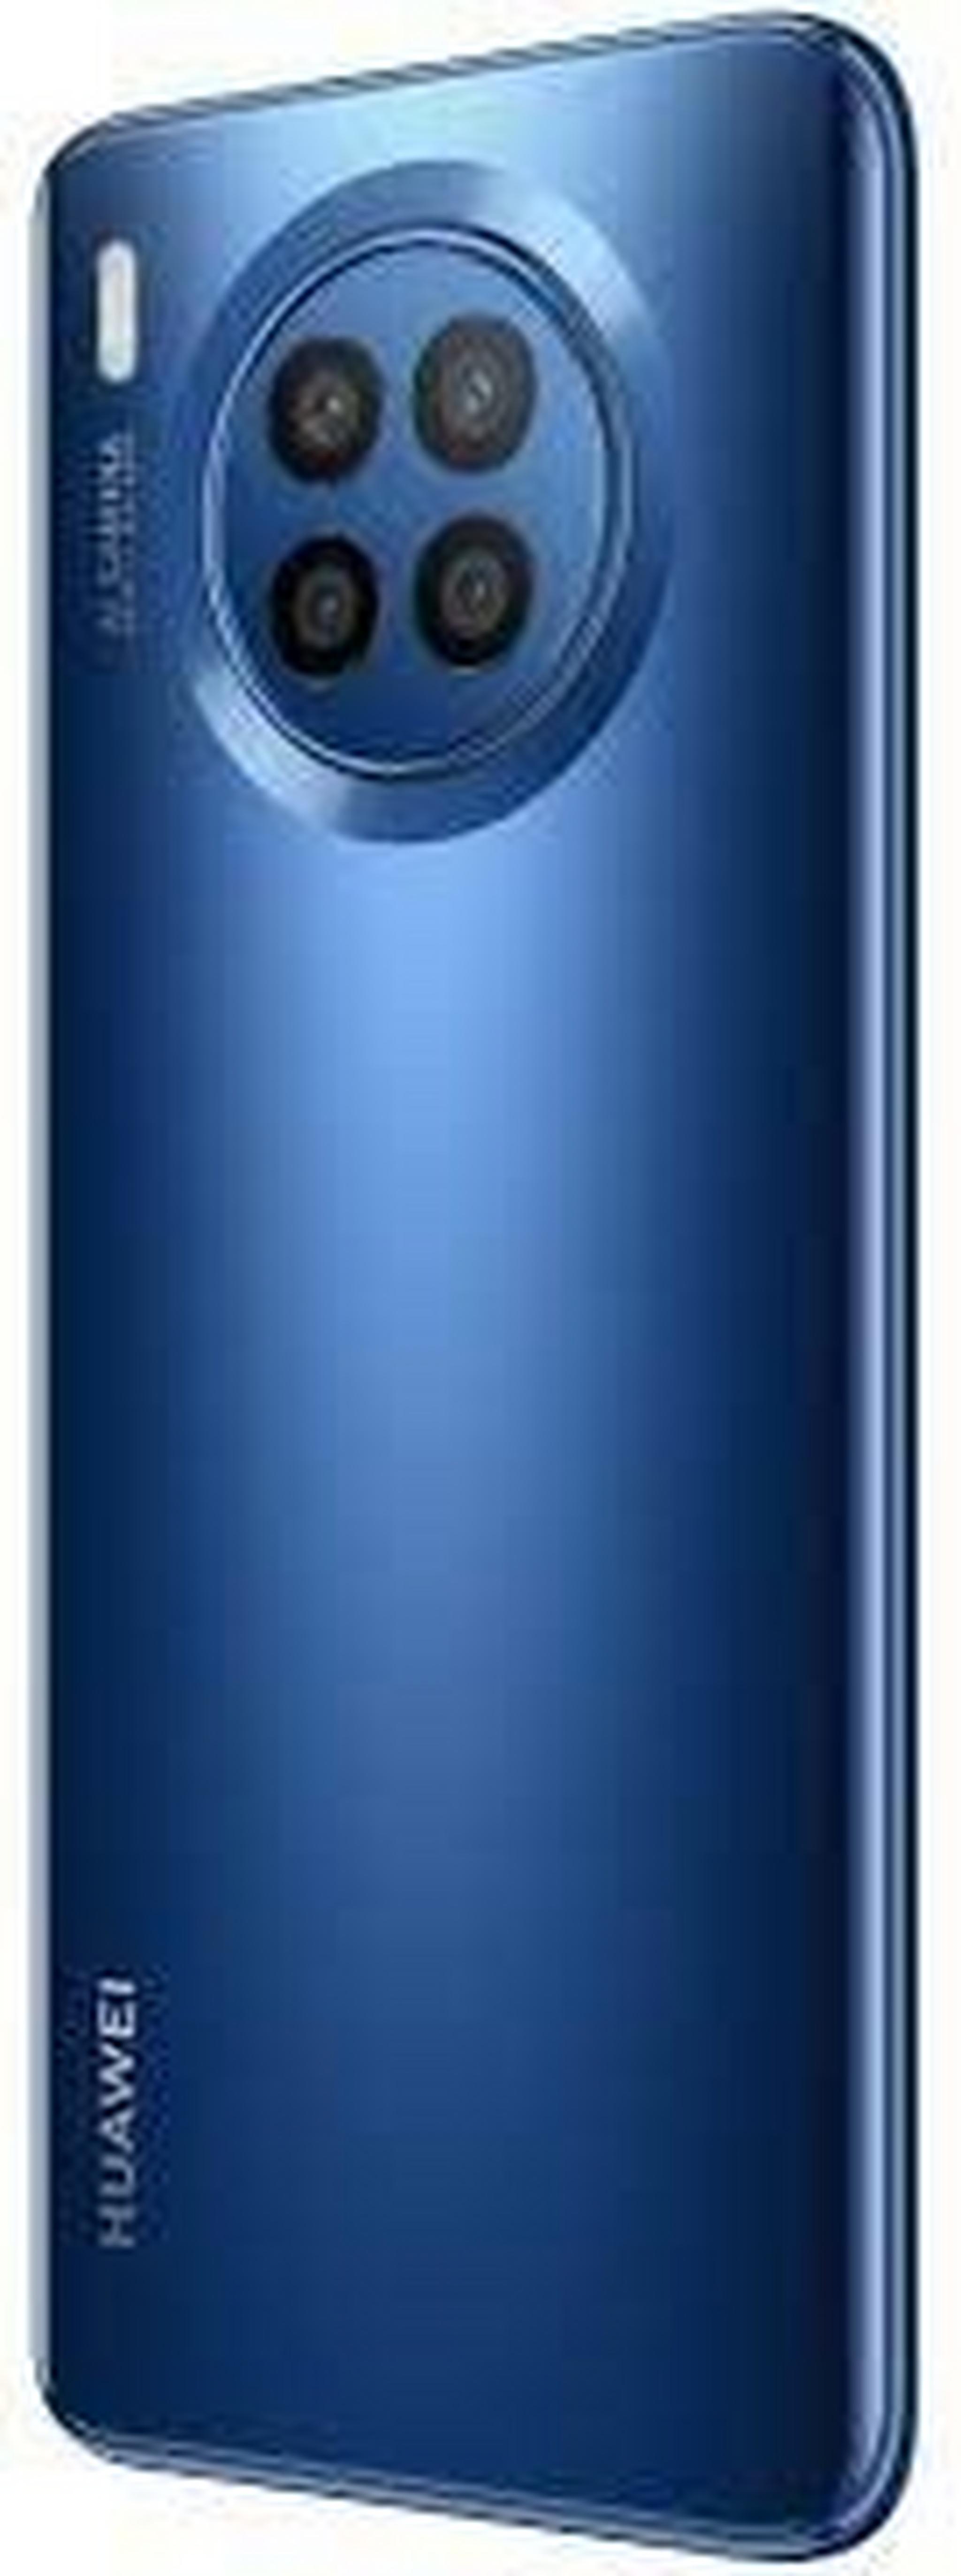 Huawei Nova 8i 128GB Phone - Blue